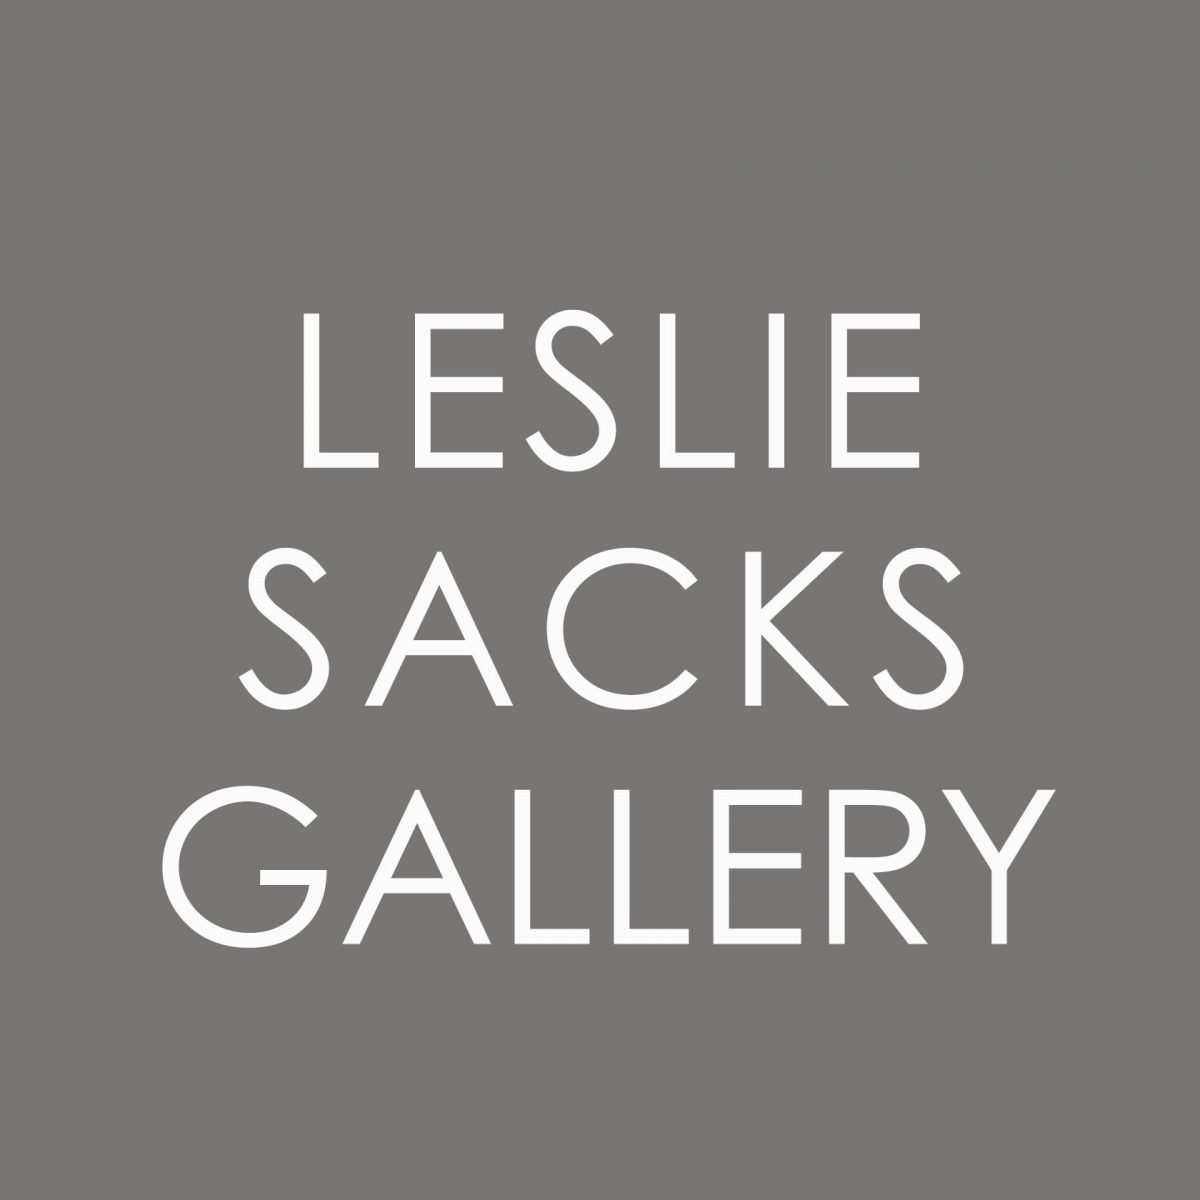 Leslie Sacks Gallery